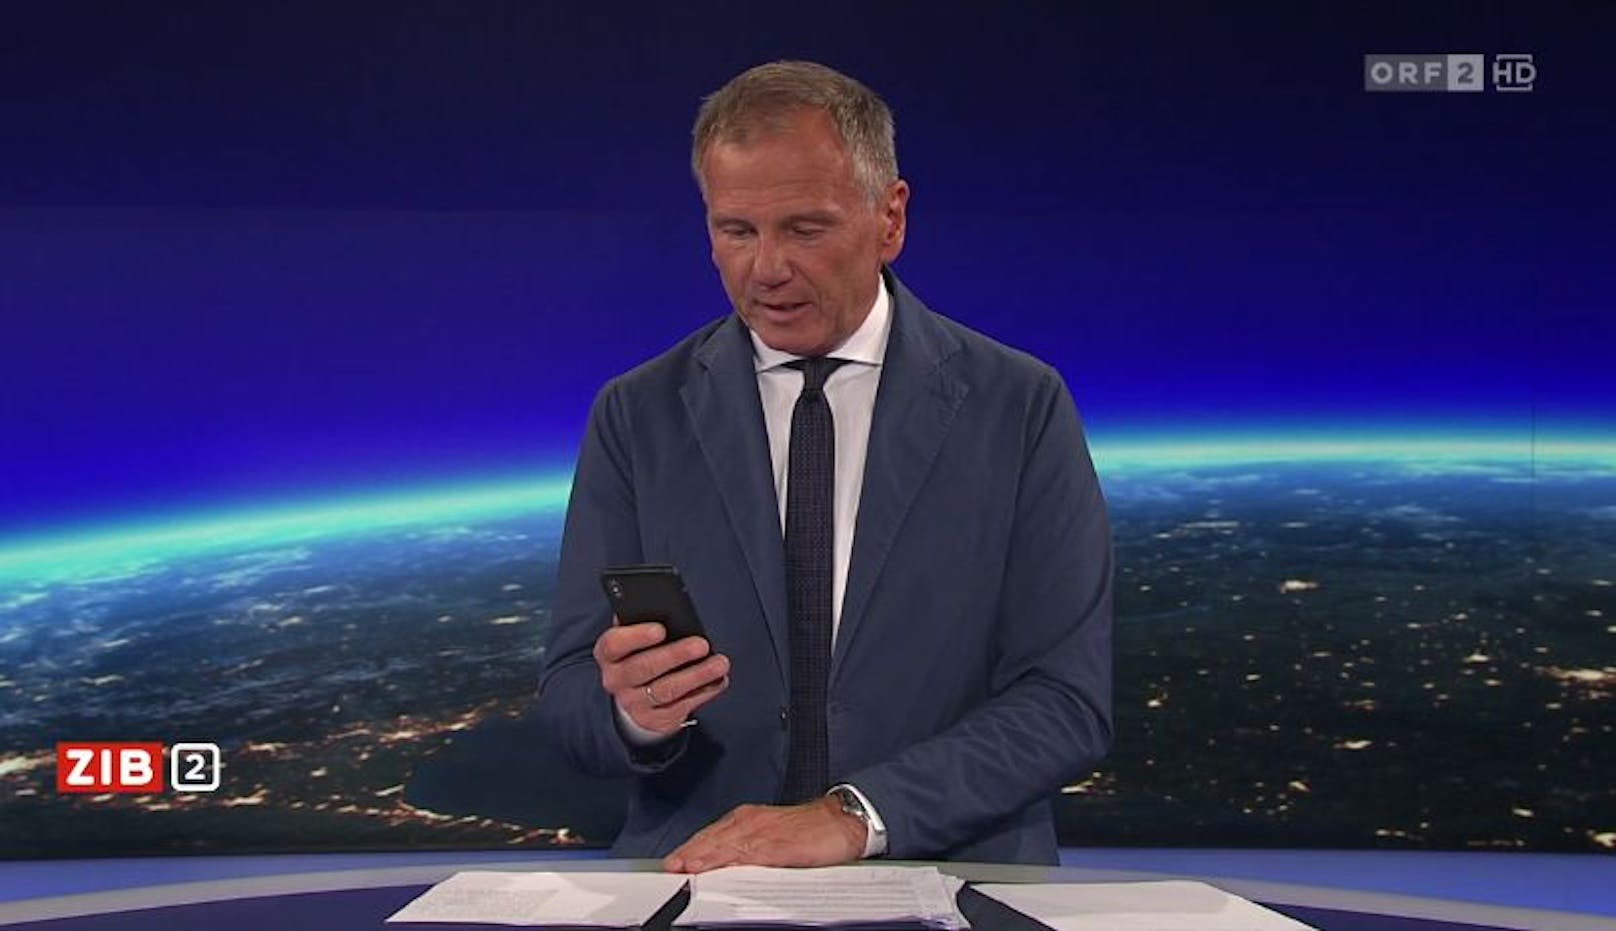 Kurioser TV-Moment in der ORF-"ZIB2" am späten Montagabend.